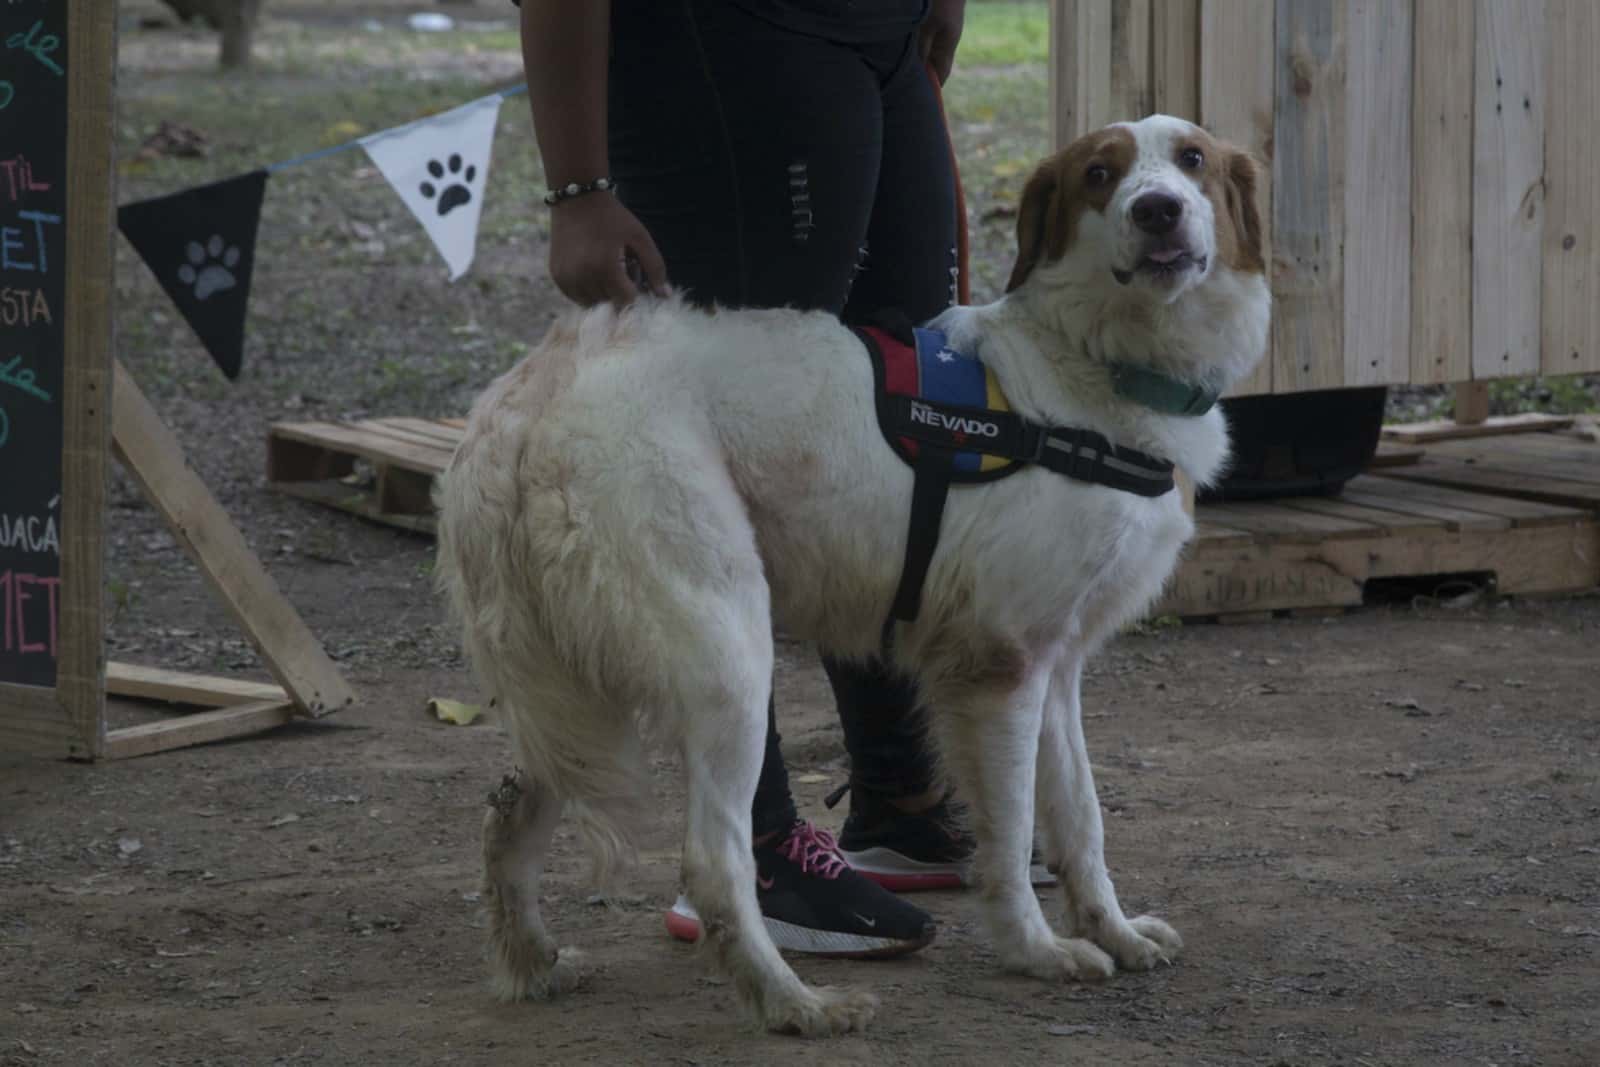 Mucuchíes, la celebración de la raza de perros venezolana